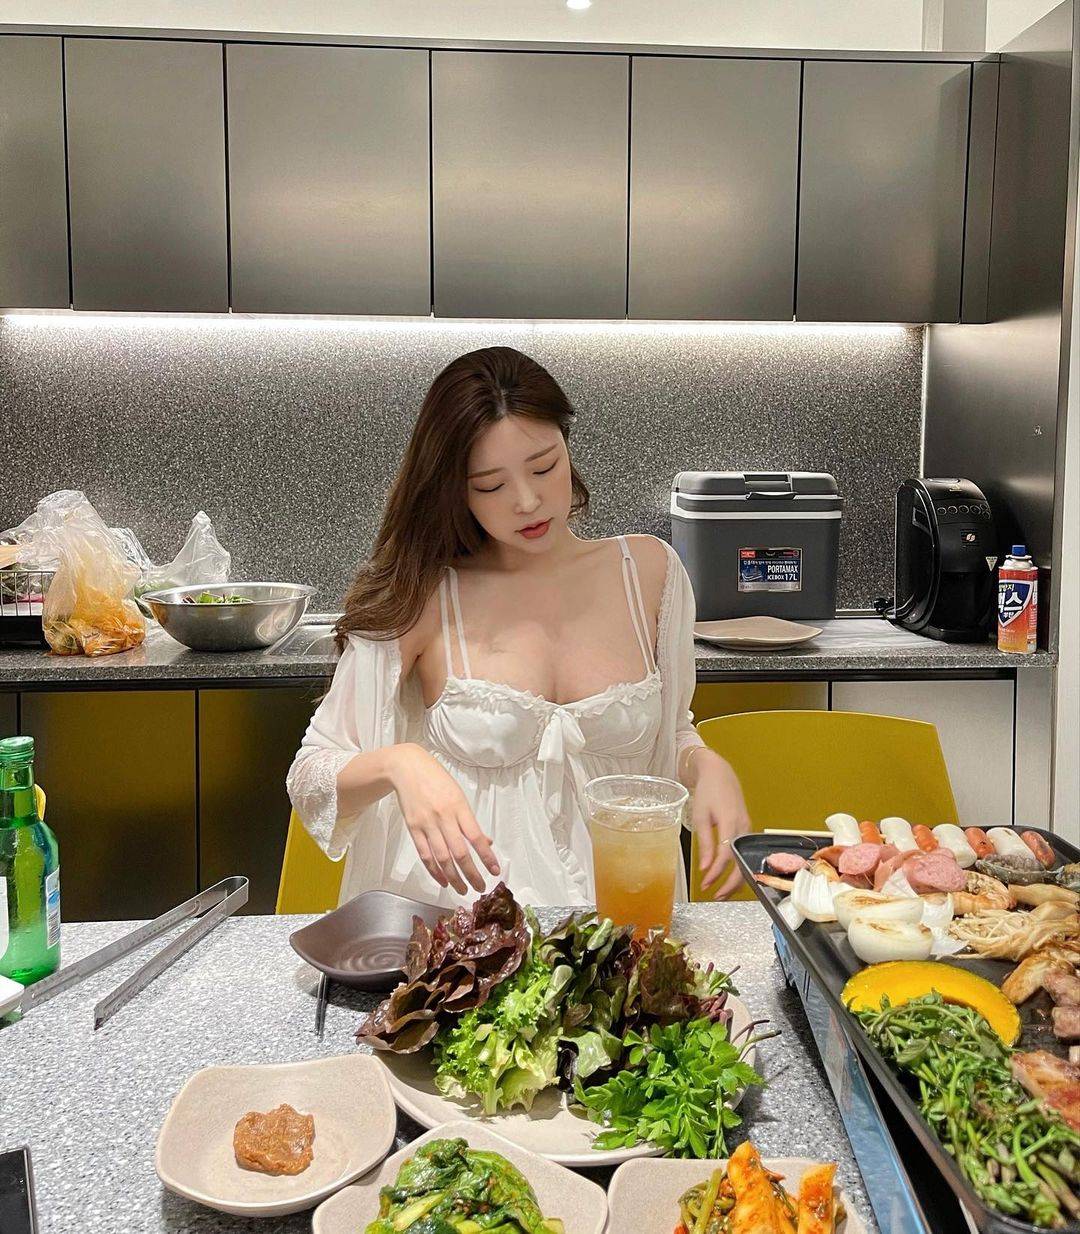 韩国主播米娜近日在社交平台发布一组照片，照片中的她正在吃烤肉，穿着白色睡衣大秀傲人身材的同时，还不忘对镜自拍，十分撩人。